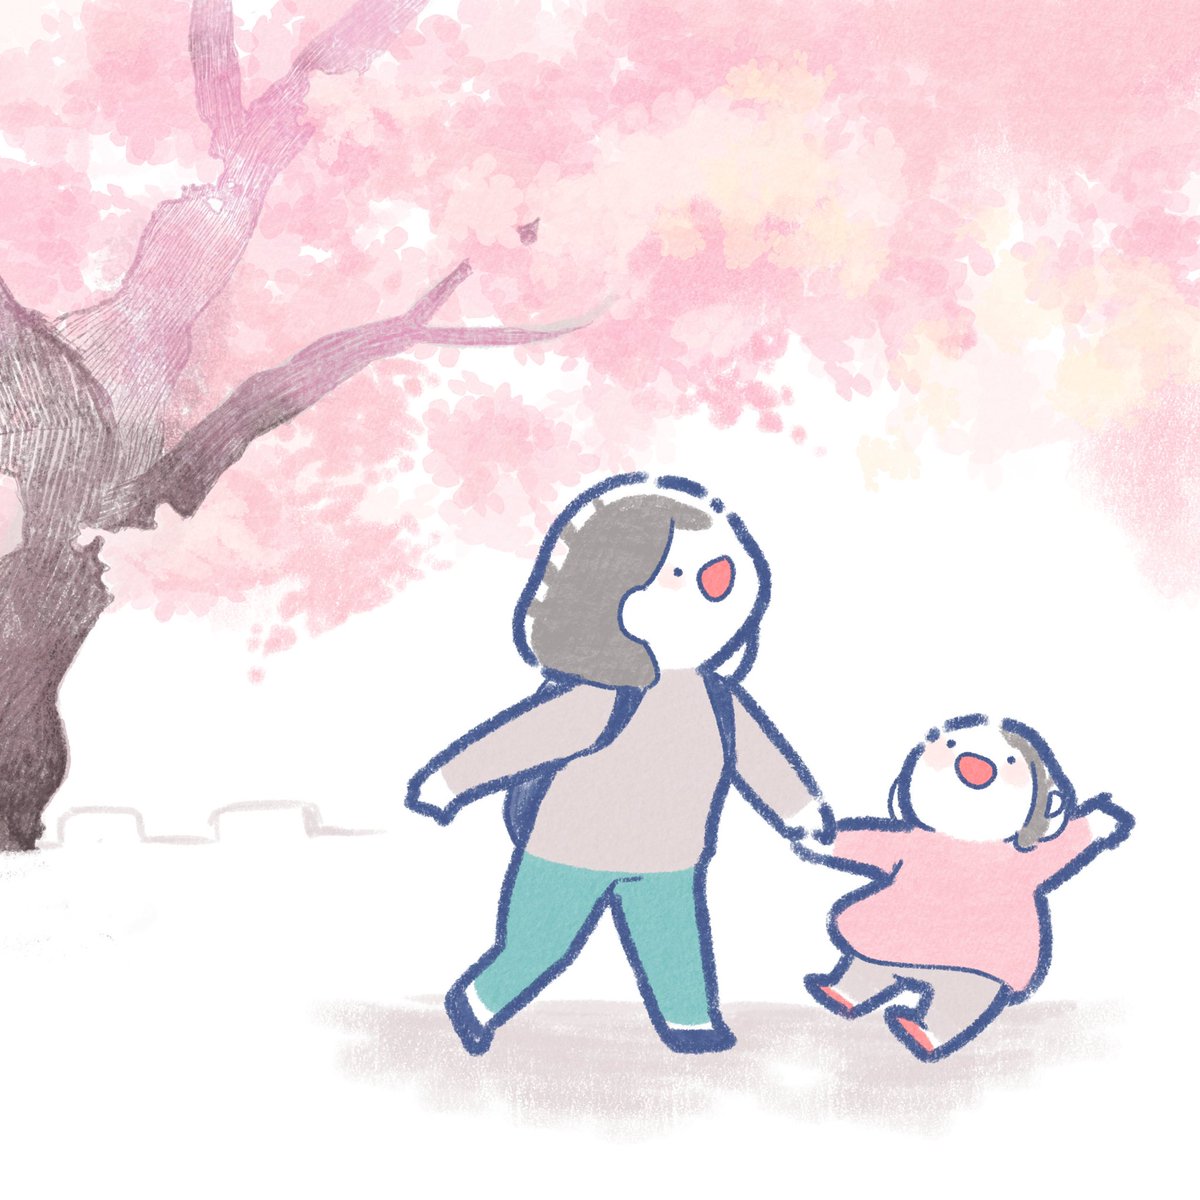 「娘が産まれてから4回目の桜の季節? 」|もちこ@5歳むすめのイラスト